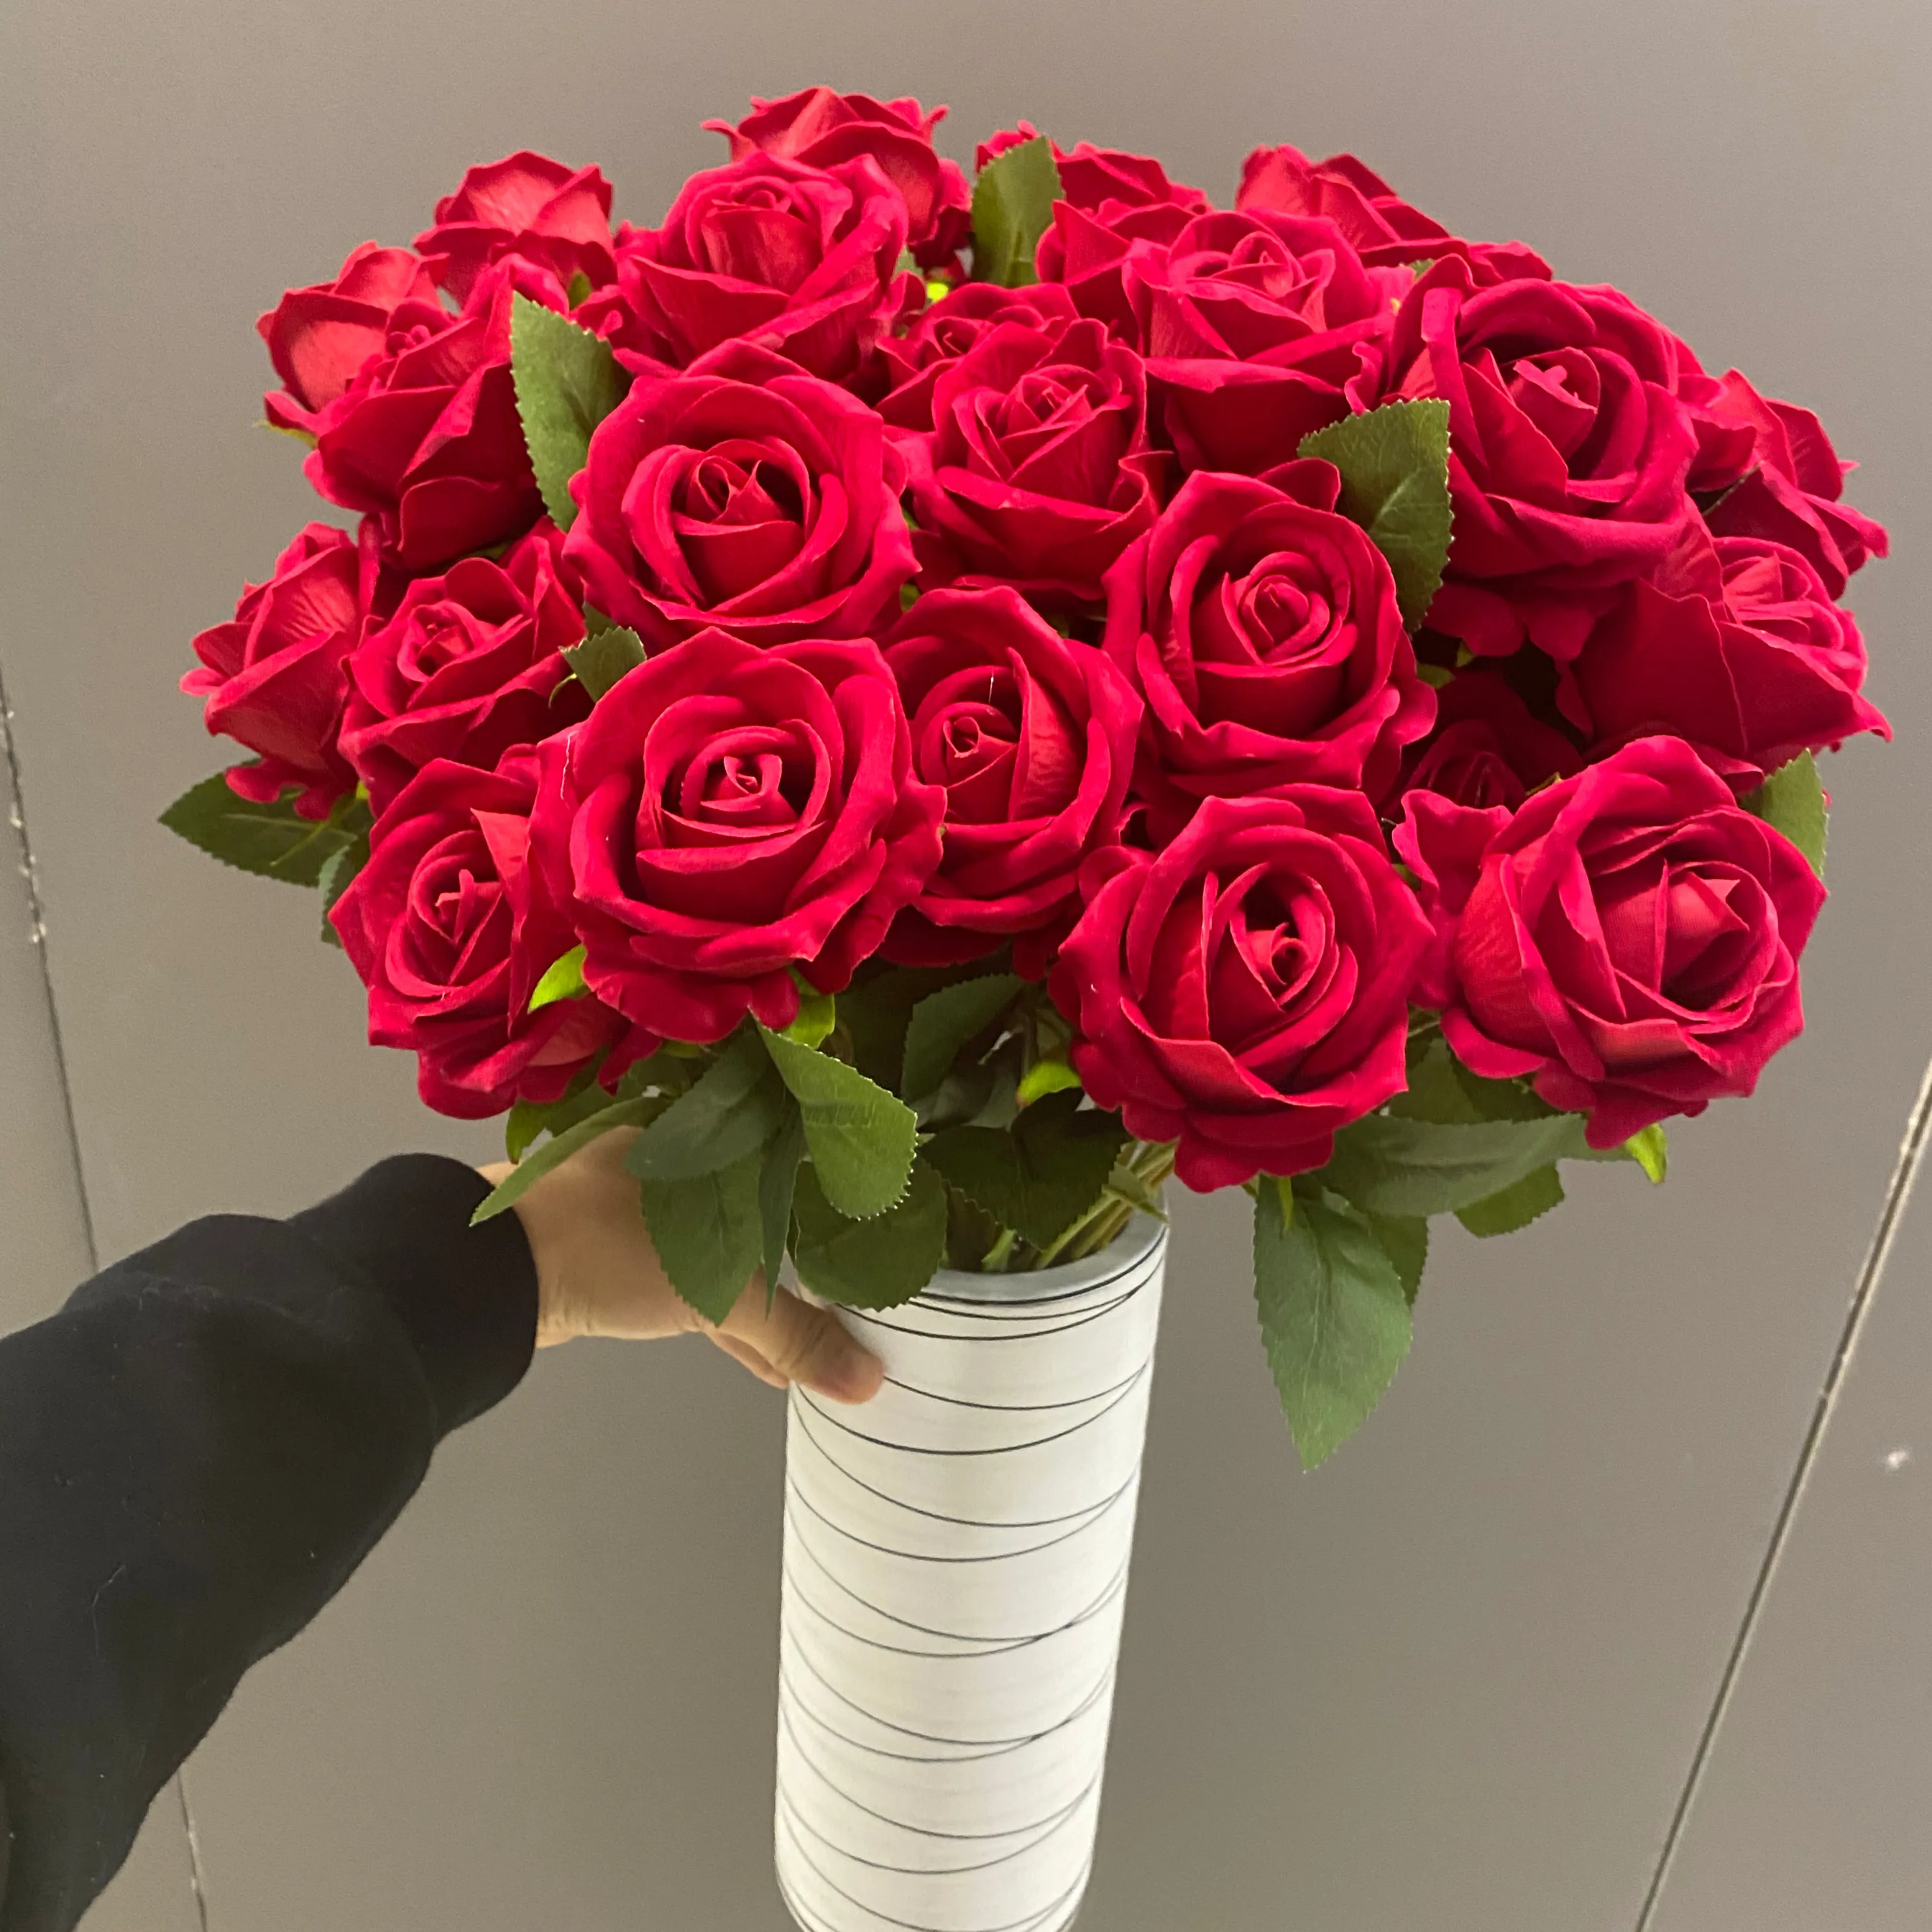 S03332 Vendita Calda Artificiale royal blu del fiore della rosa di Cerimonia Nuziale Decorativa Singolo Stelo Del Fiore Artificiale Rosso rose di velluto fiore